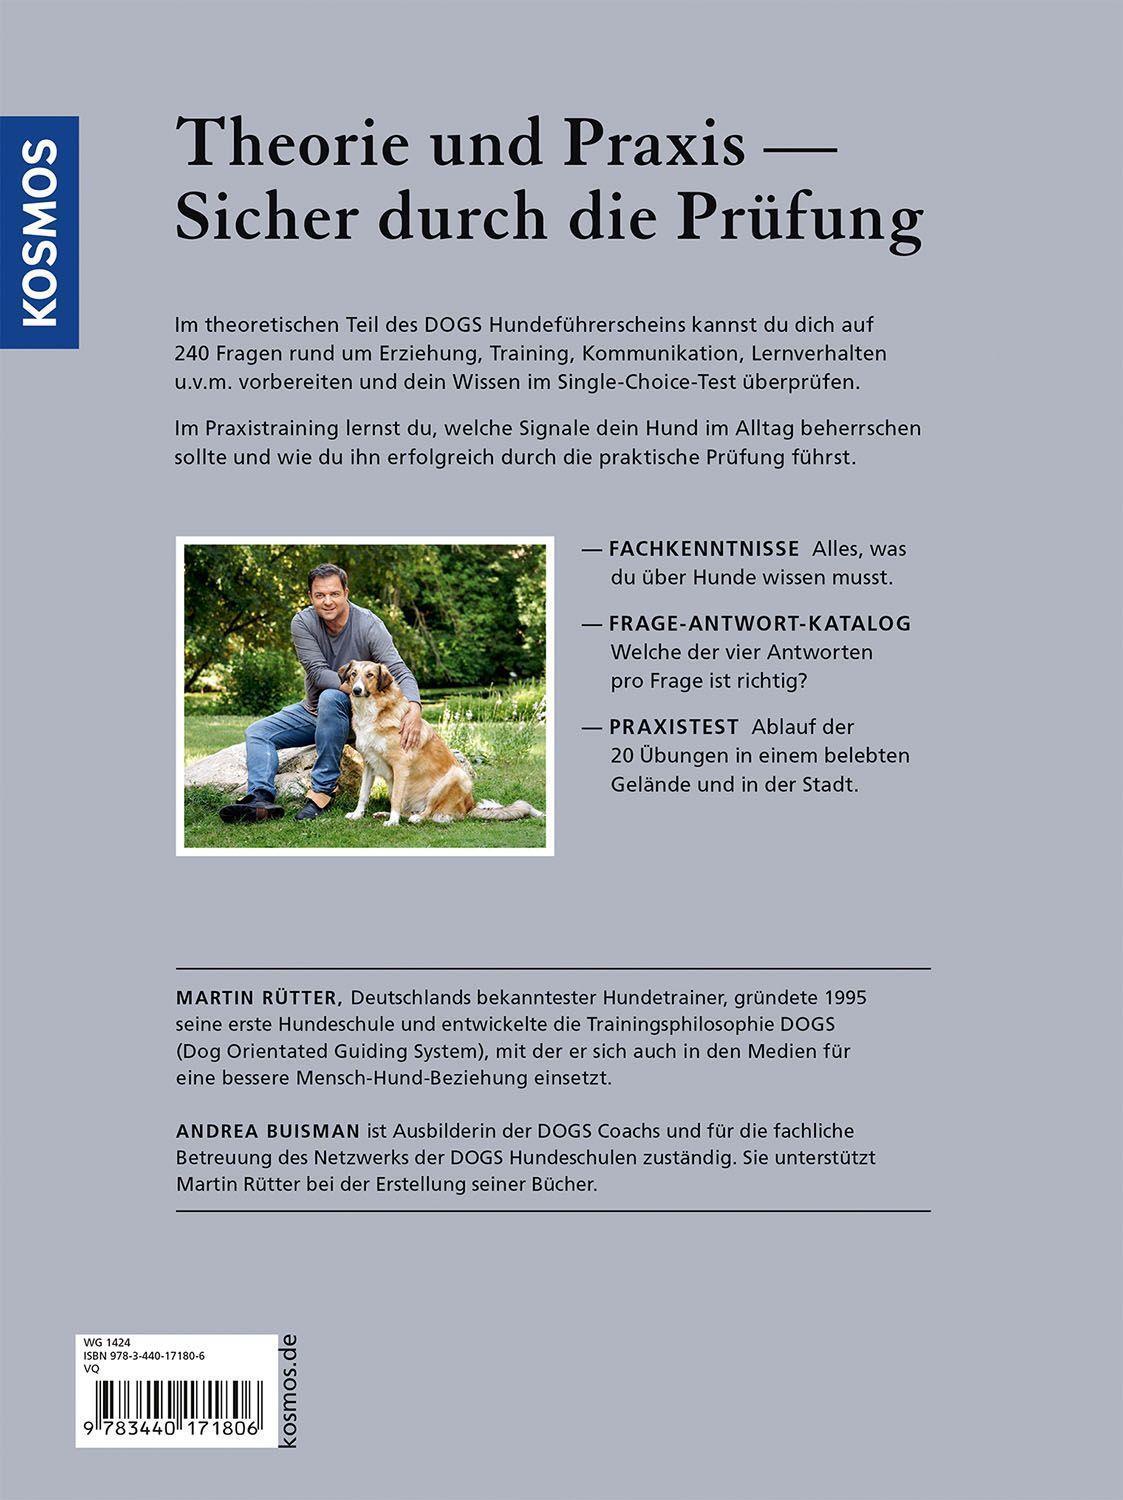 Bild: 9783440171806 | DOGS Hundeführerschein | Mit Frage-Antwort-Katalog | Rütter (u. a.)